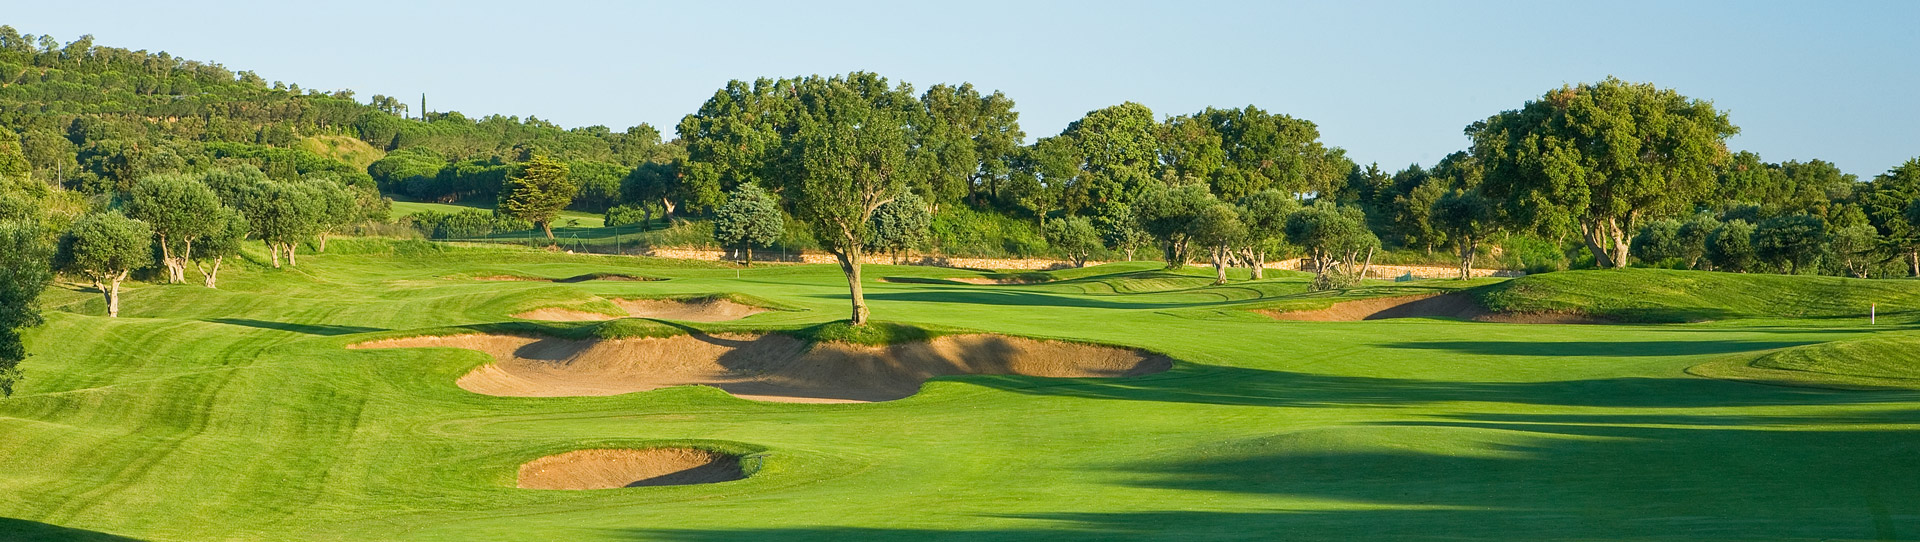 Spain golf courses - Golf d Aro - Photo 3